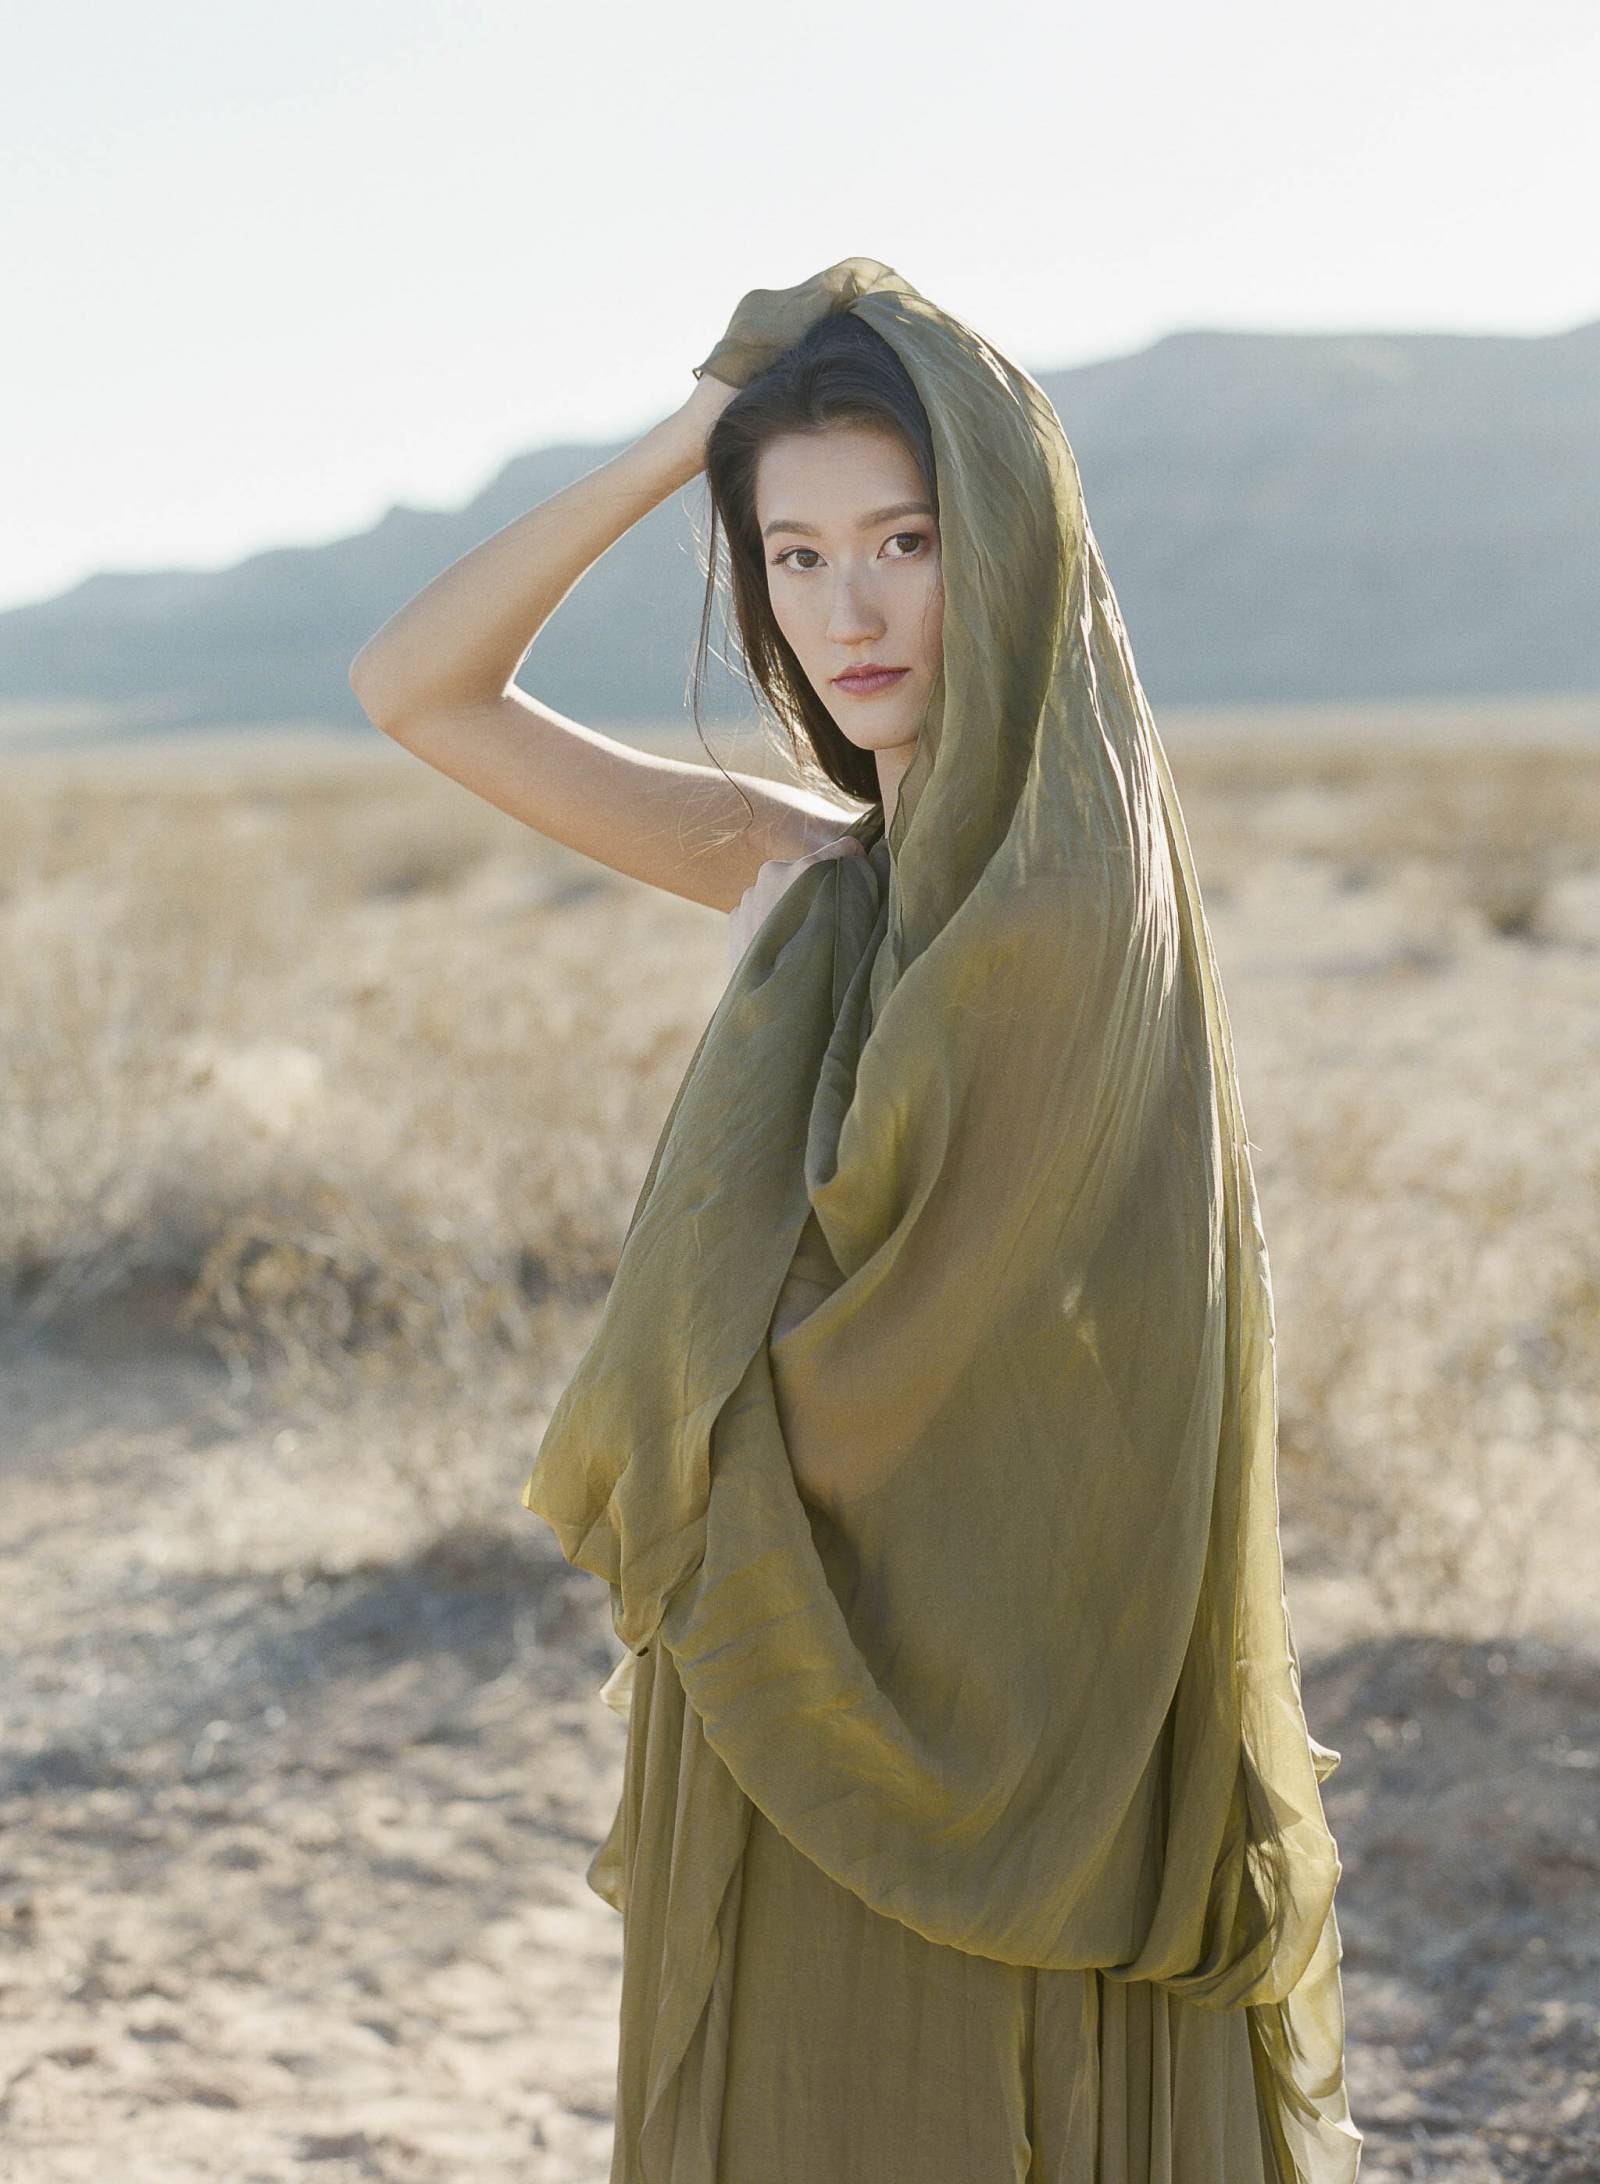 Desert wedding inspiration with a stunning green gown | Las Vegas ...